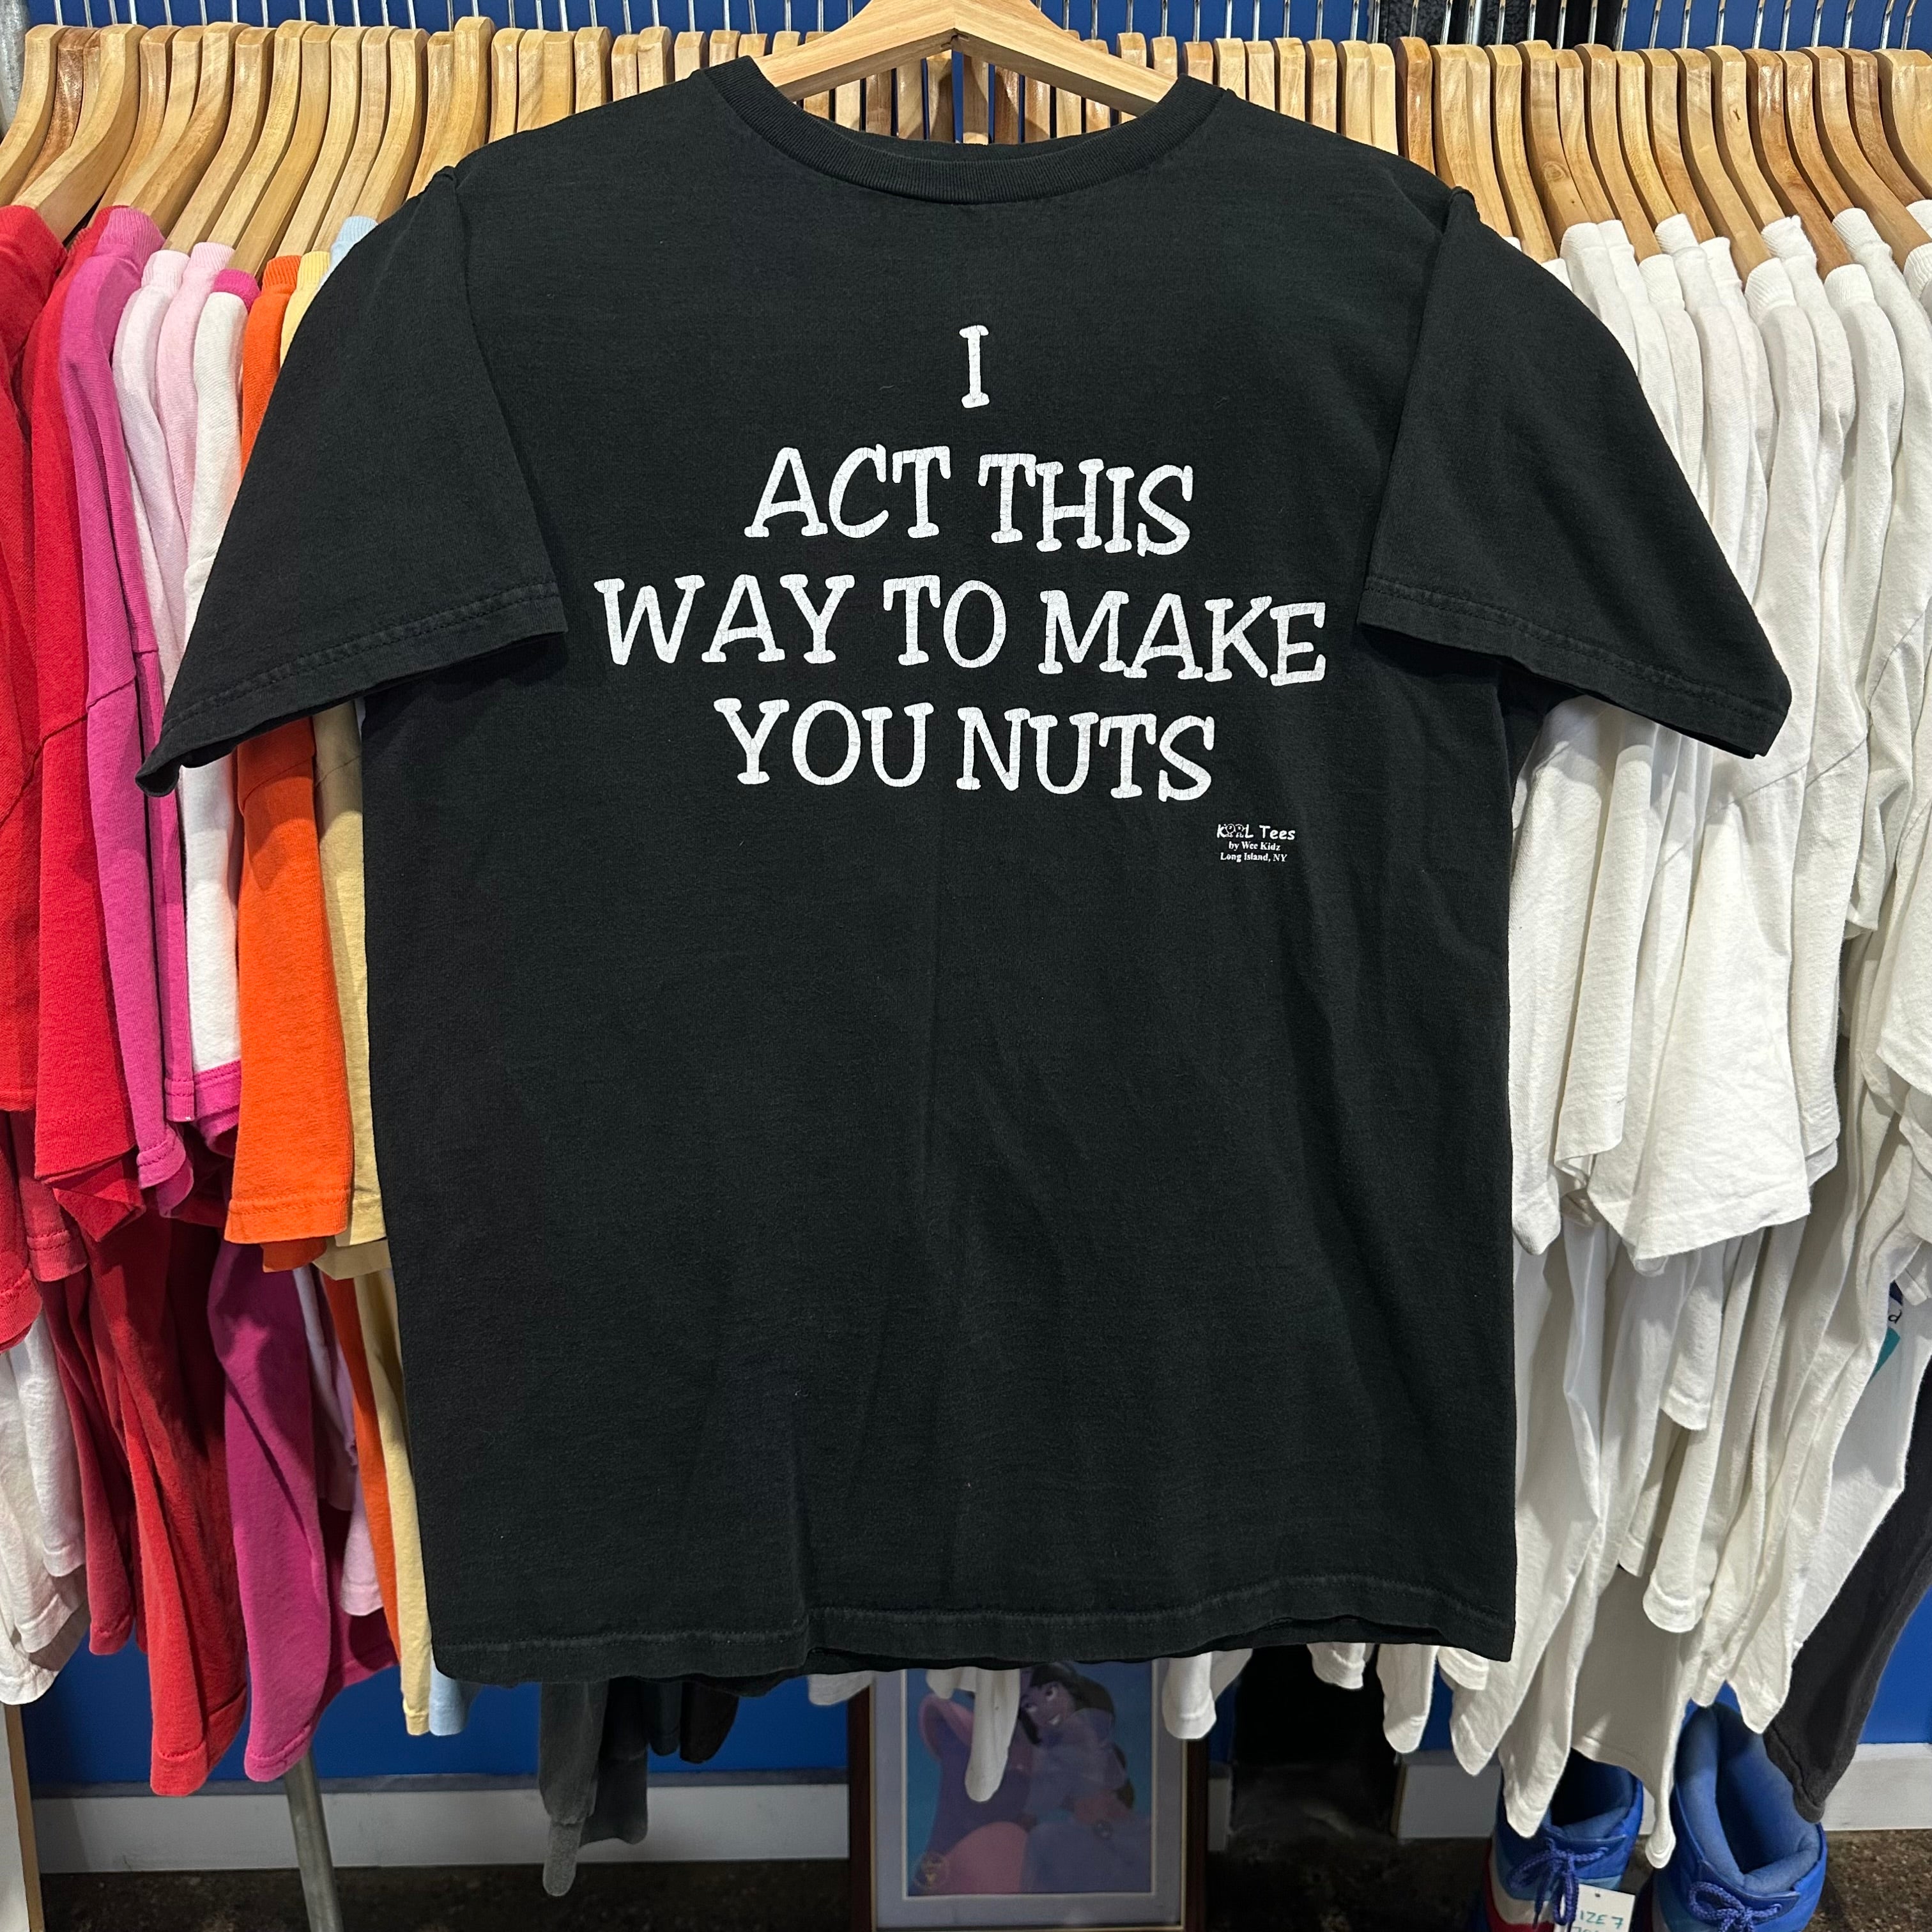 Act This Way… Nuts! T-Shirt